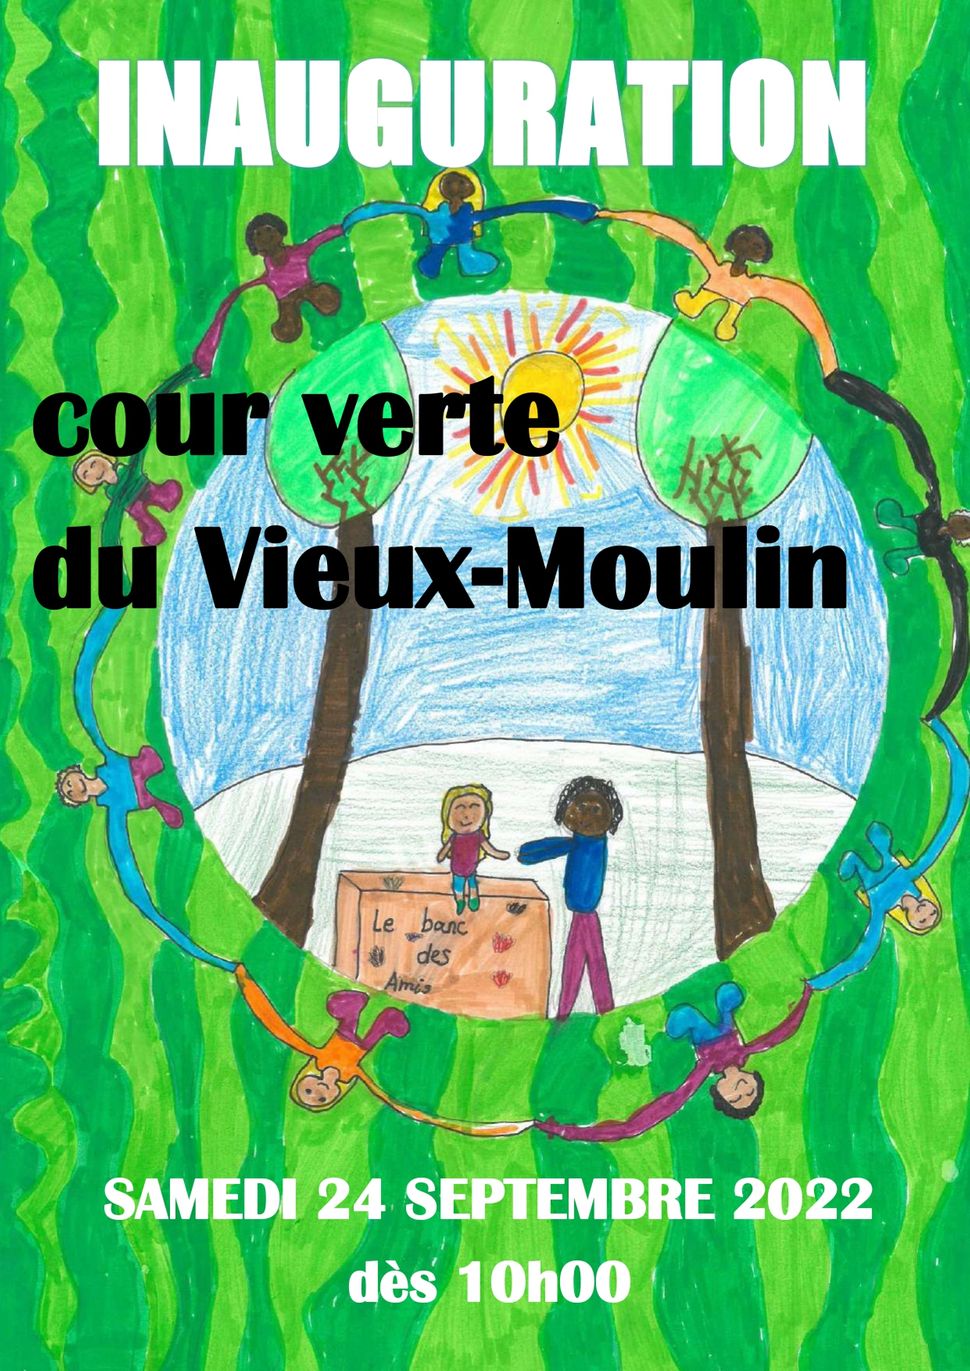 © Collège du Vieux-Moulin